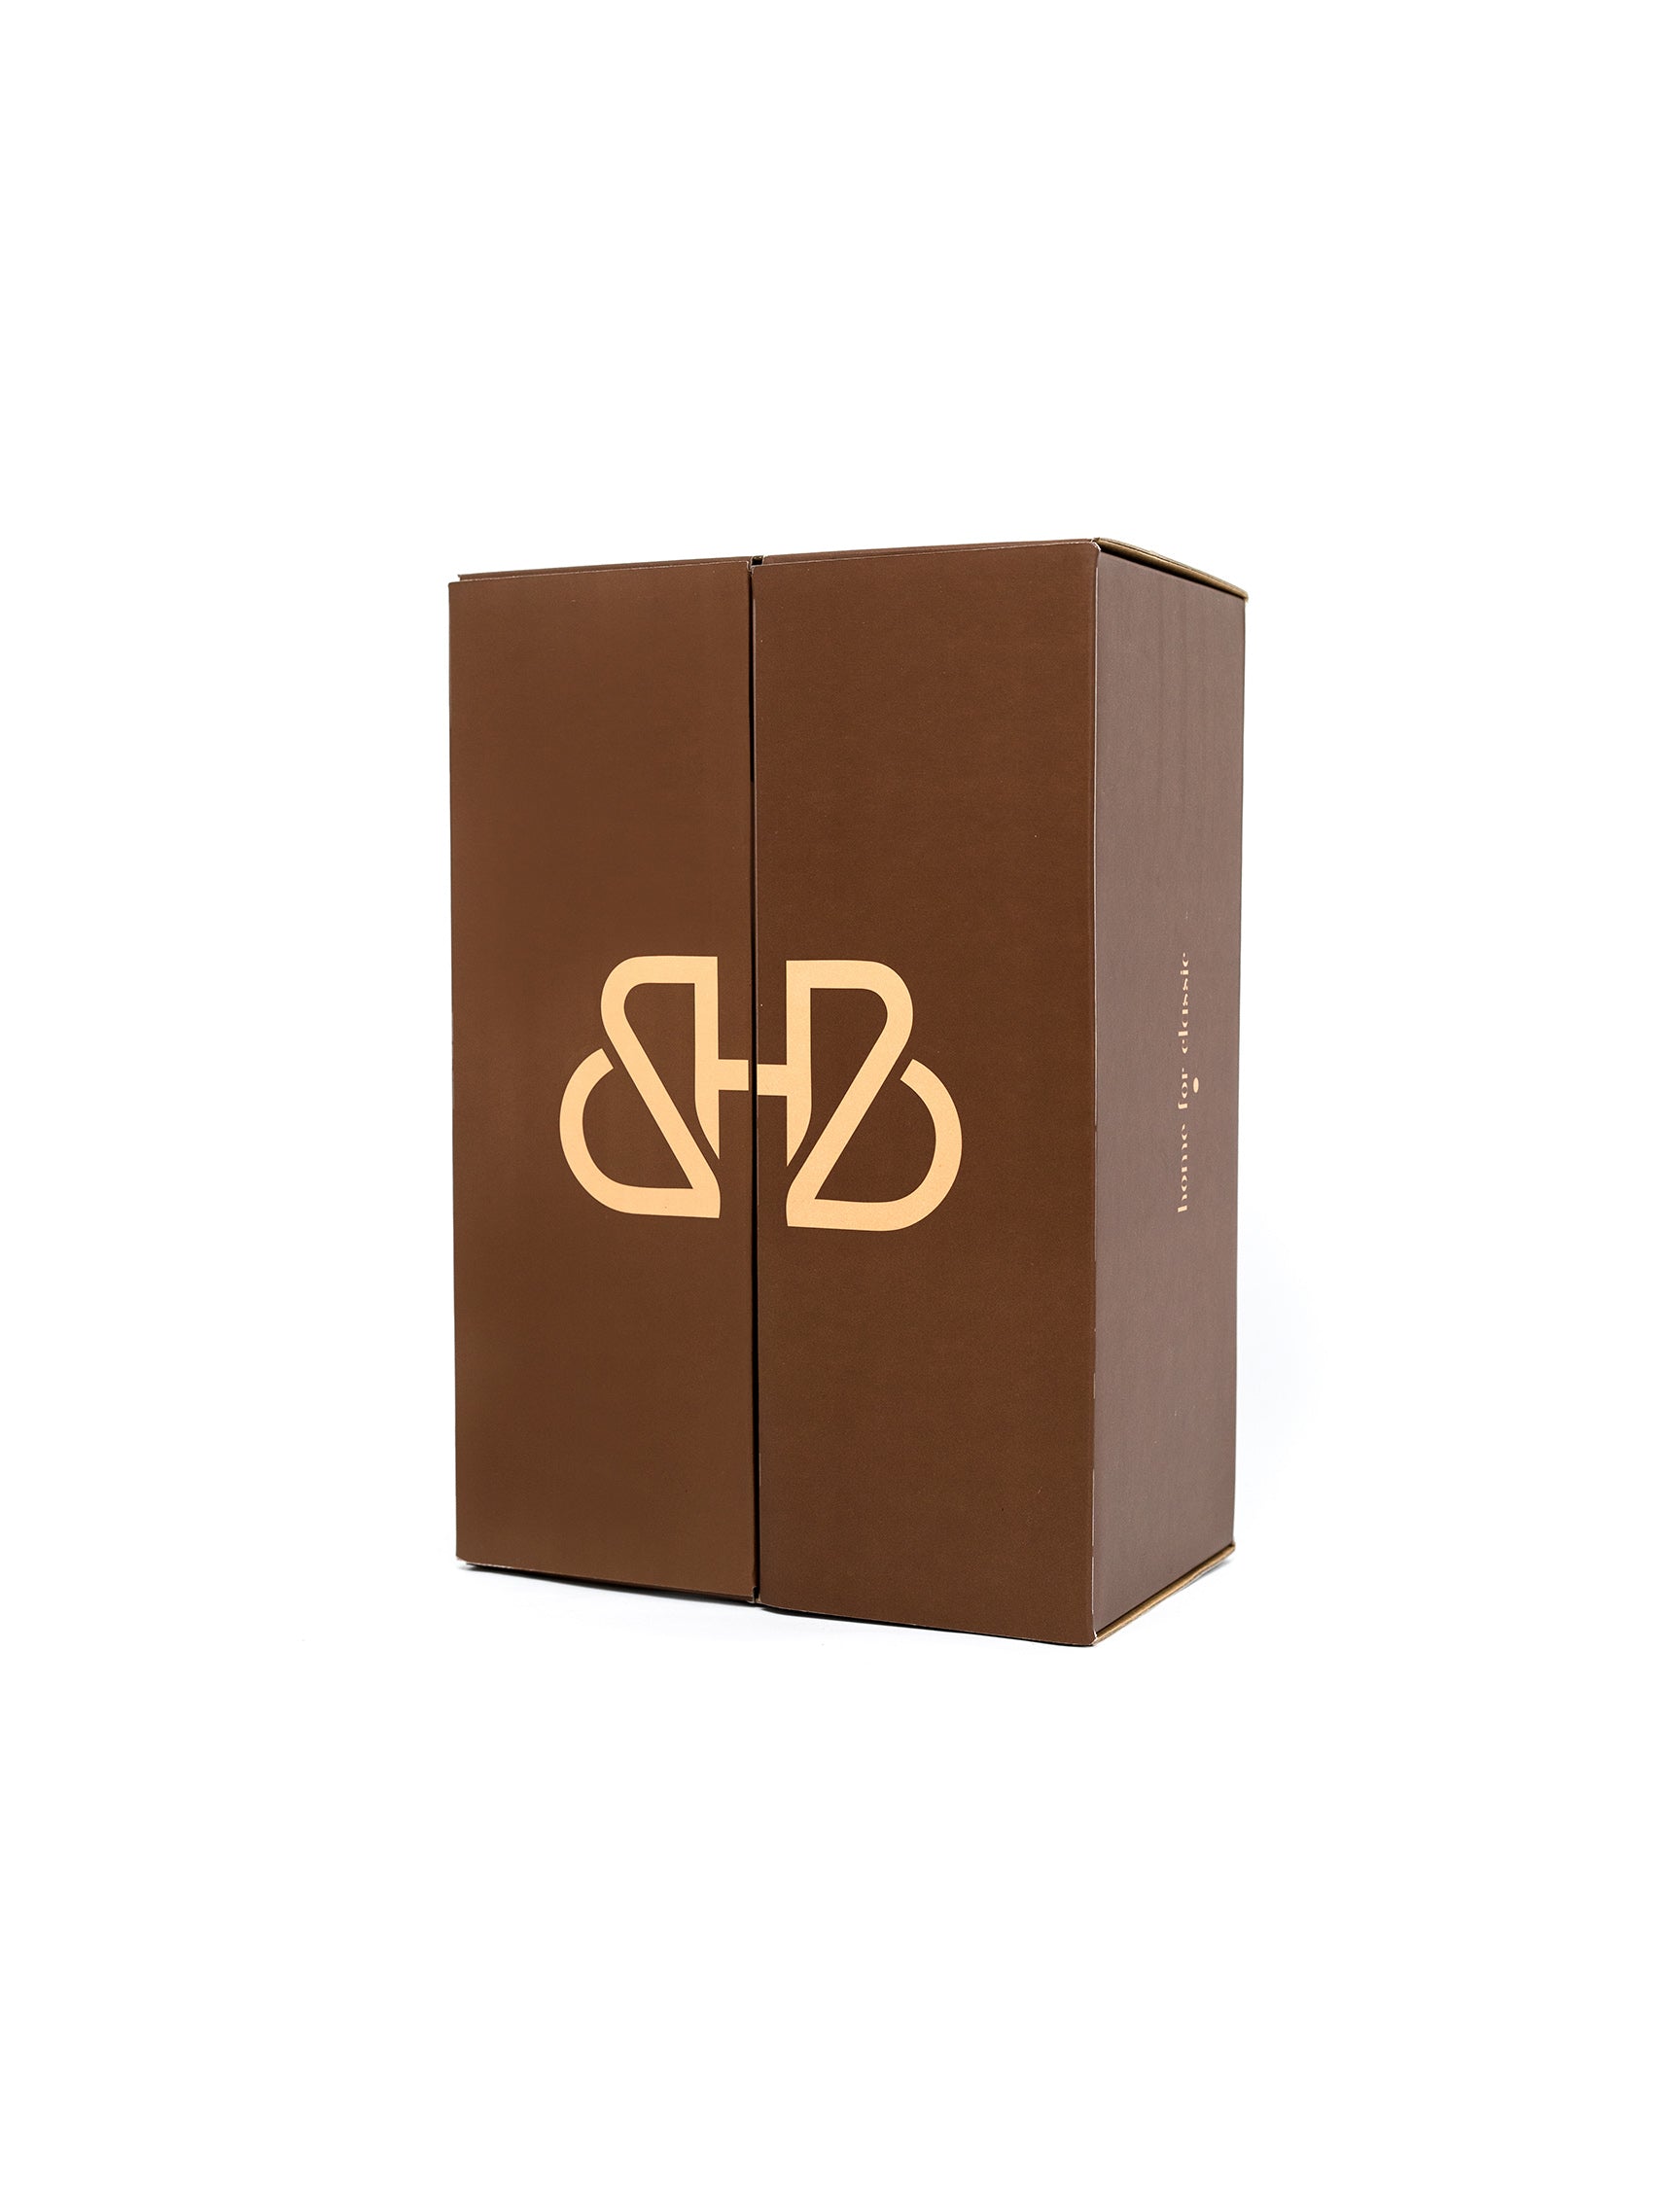 Monogram Gift Box